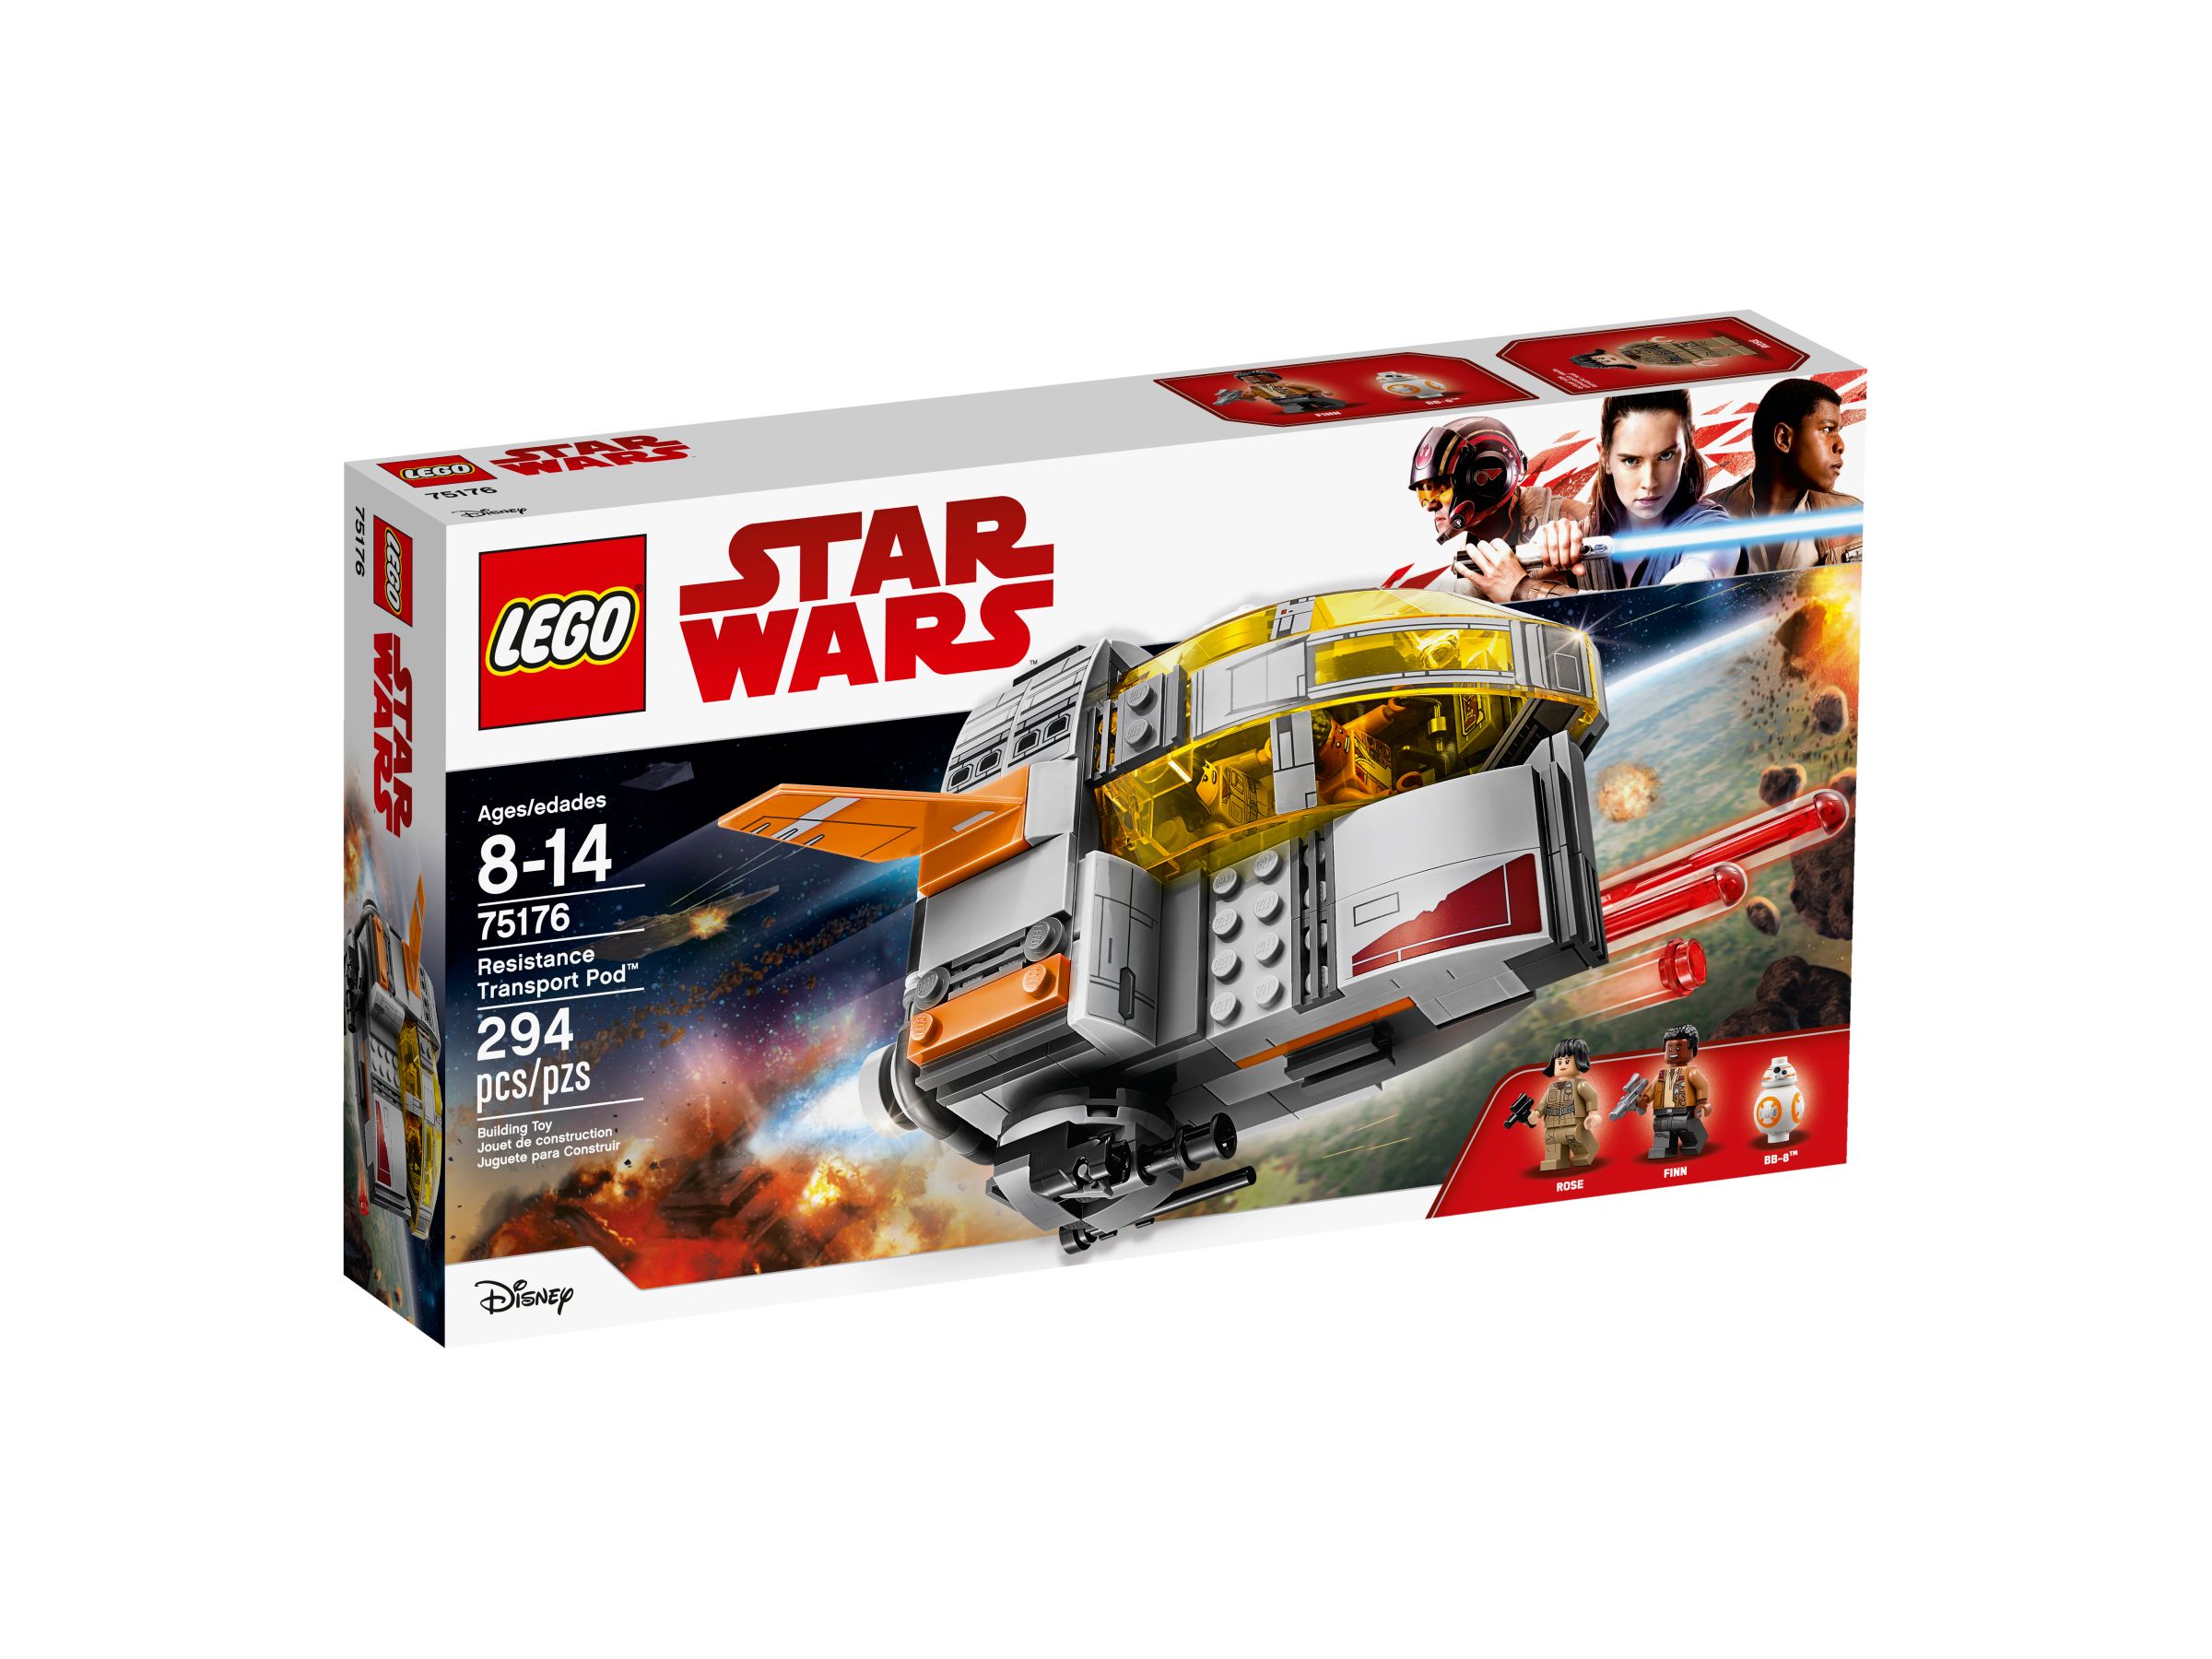 LEGO Star Wars 75176 Resistance Transport Pod™ LEGO_75176_alt1.jpg